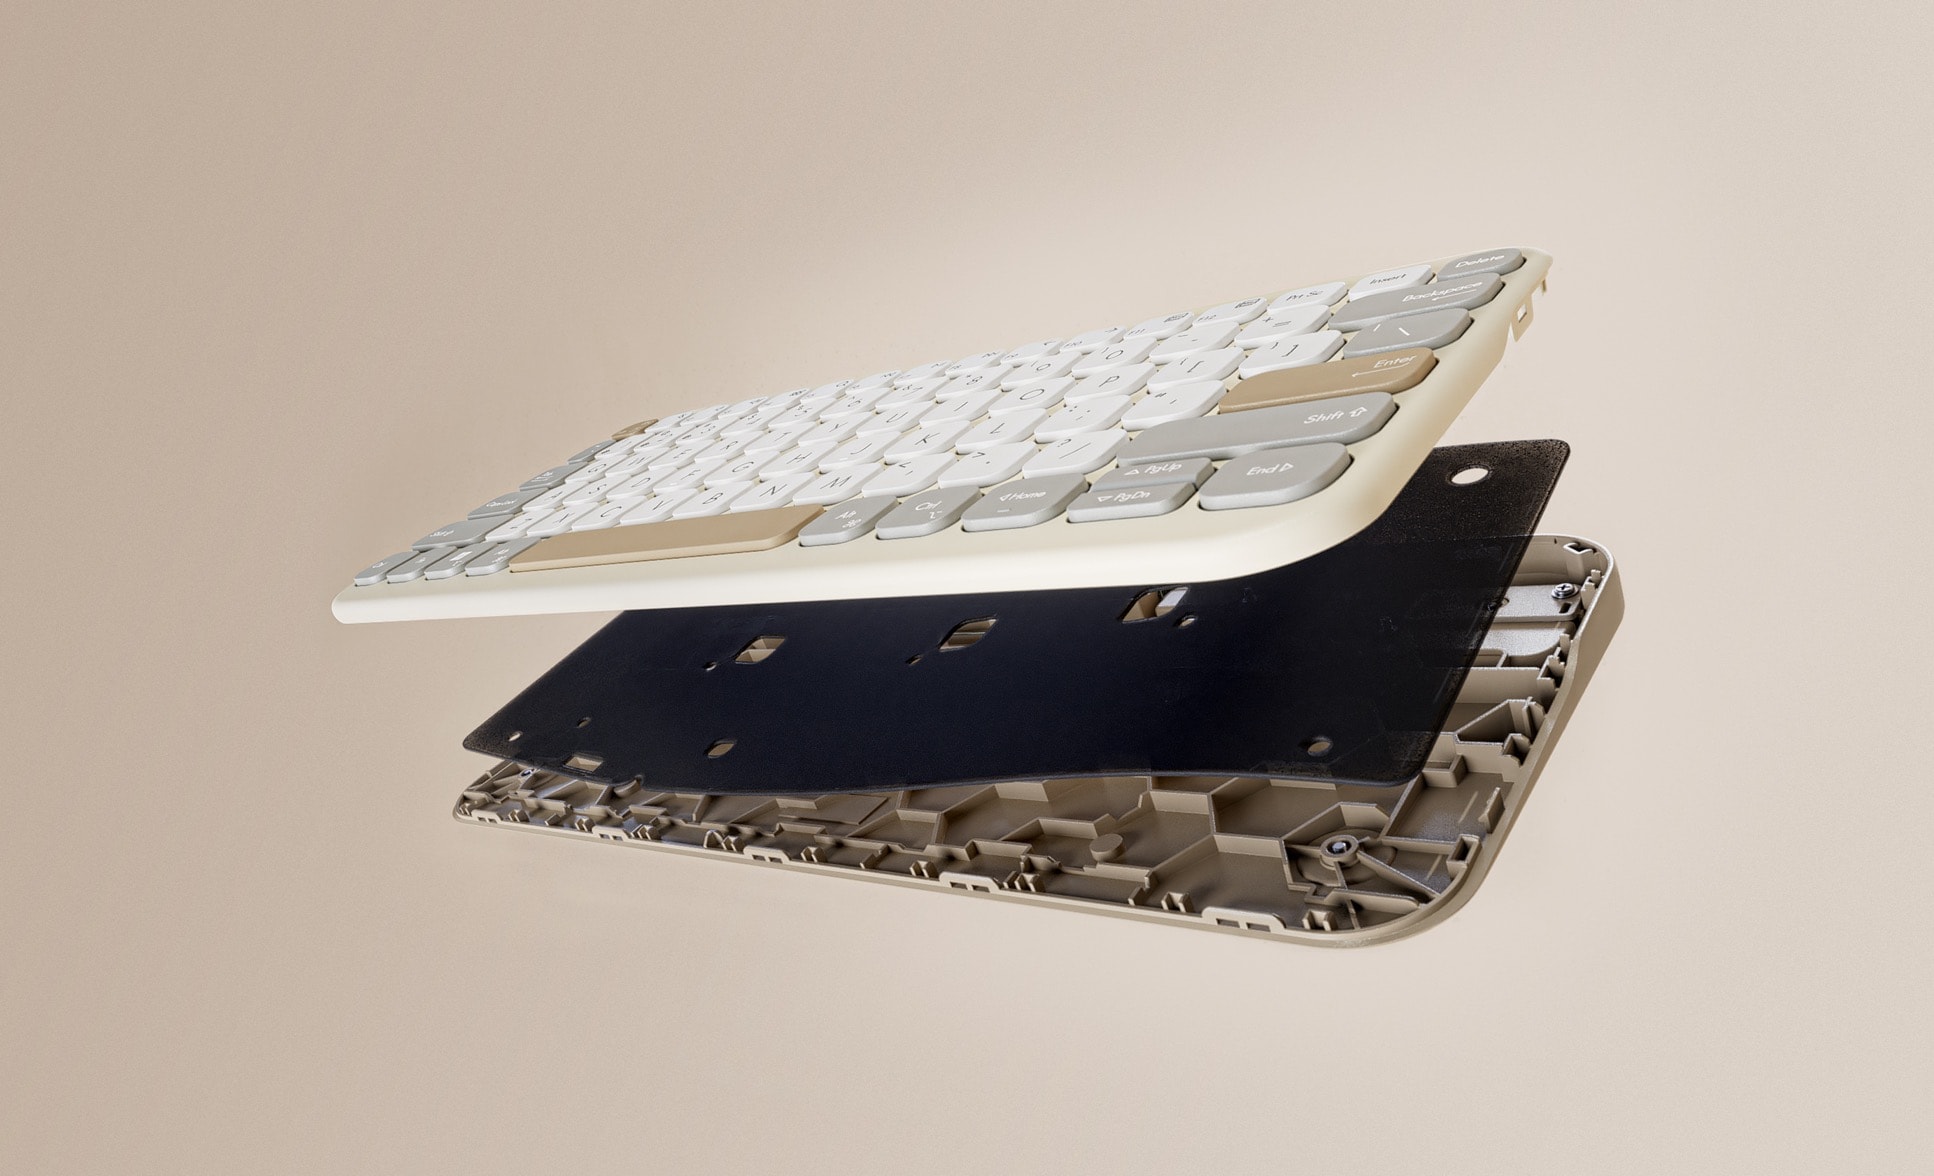 Film przedstawiający klawiaturę ASUS Marshmallow w widoku z rozłożeniem na części, z pokazaną wyciszającą warstwą piankową zapewniającą cichą pracę.